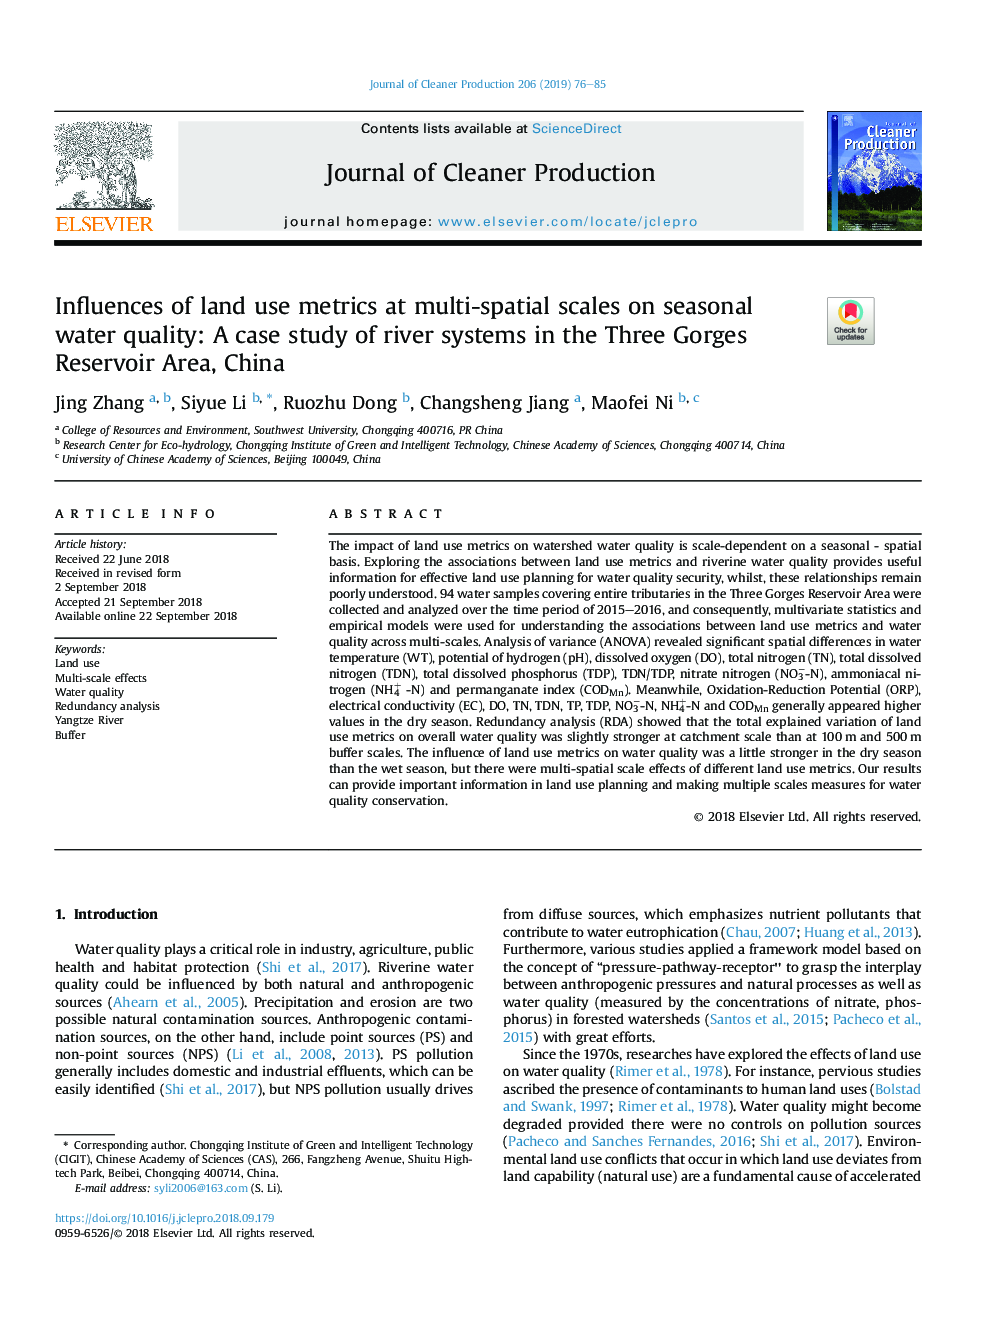 تاثیرات معیارهای استفاده از زمین در مقیاس های چند فضایی بر کیفیت آب فصلی: مطالعه موردی سیستم های رودخانه در منطقه مخزن سه گنج، چین